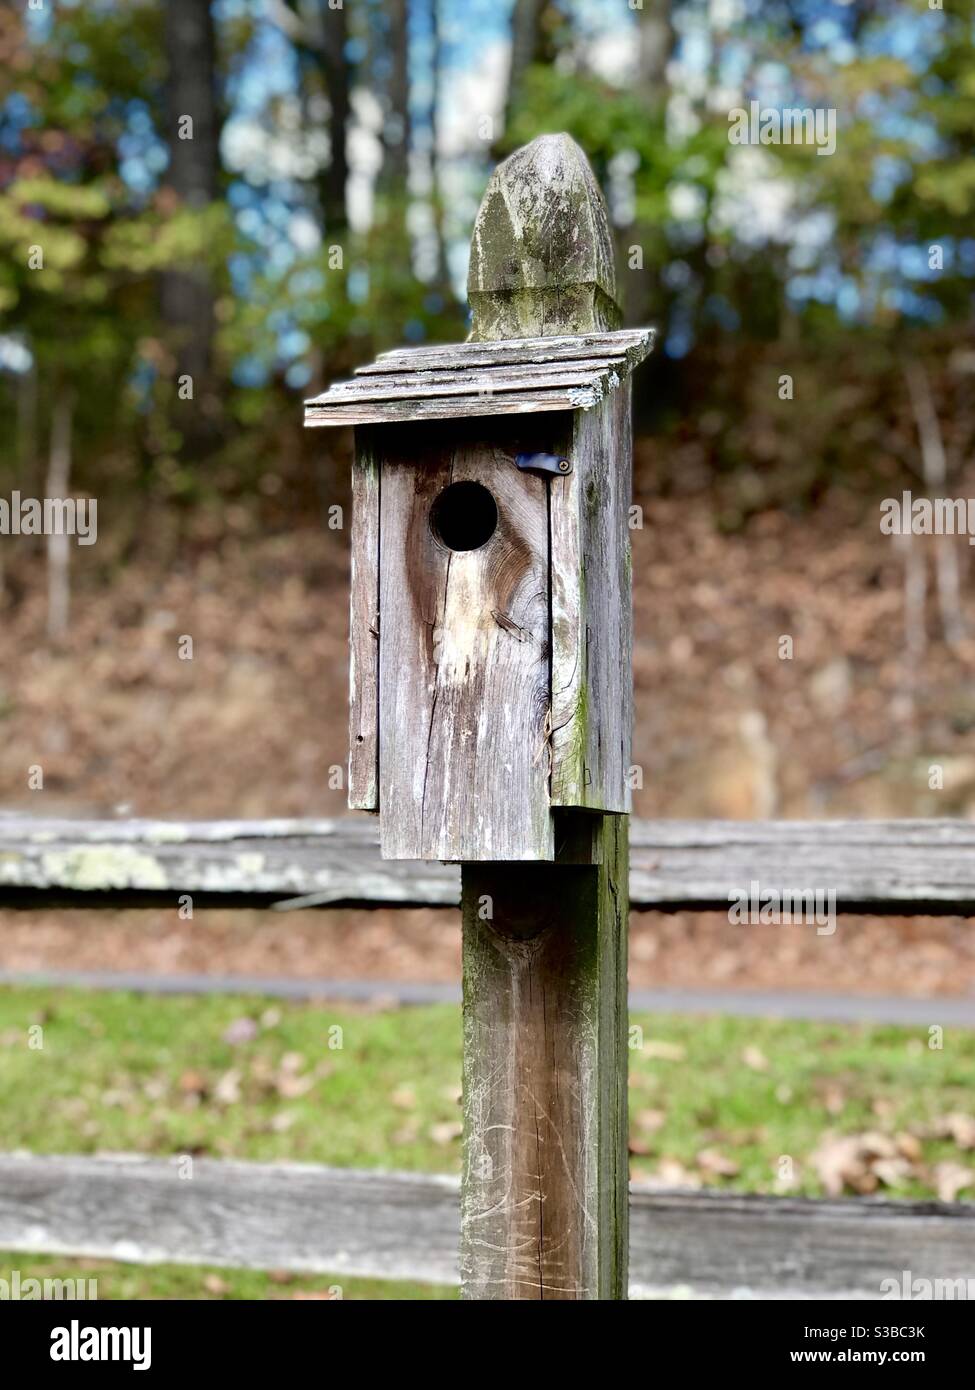 Vogelhaus aus Holz am Pfosten durch einen Zaun Stockfotografie - Alamy